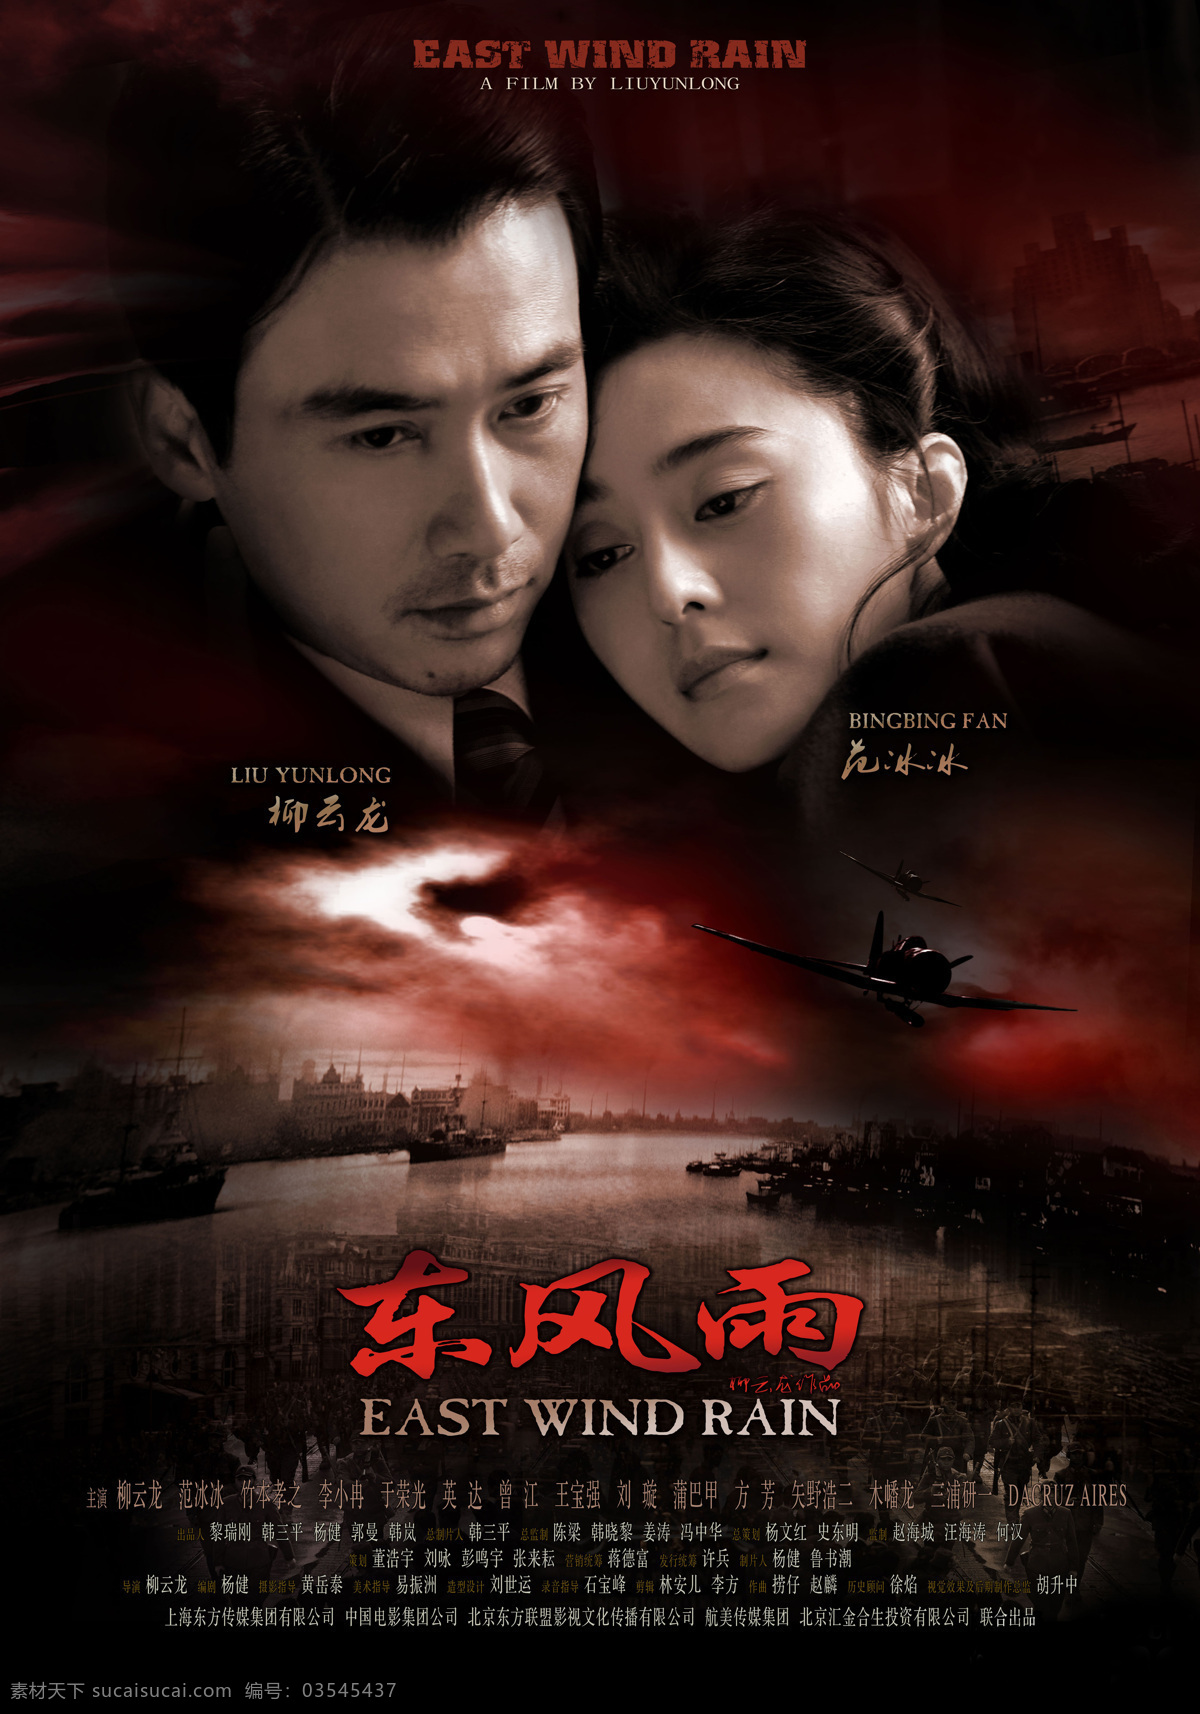 高清原版海报 2010 东 风雨 rain wind east 东风雨